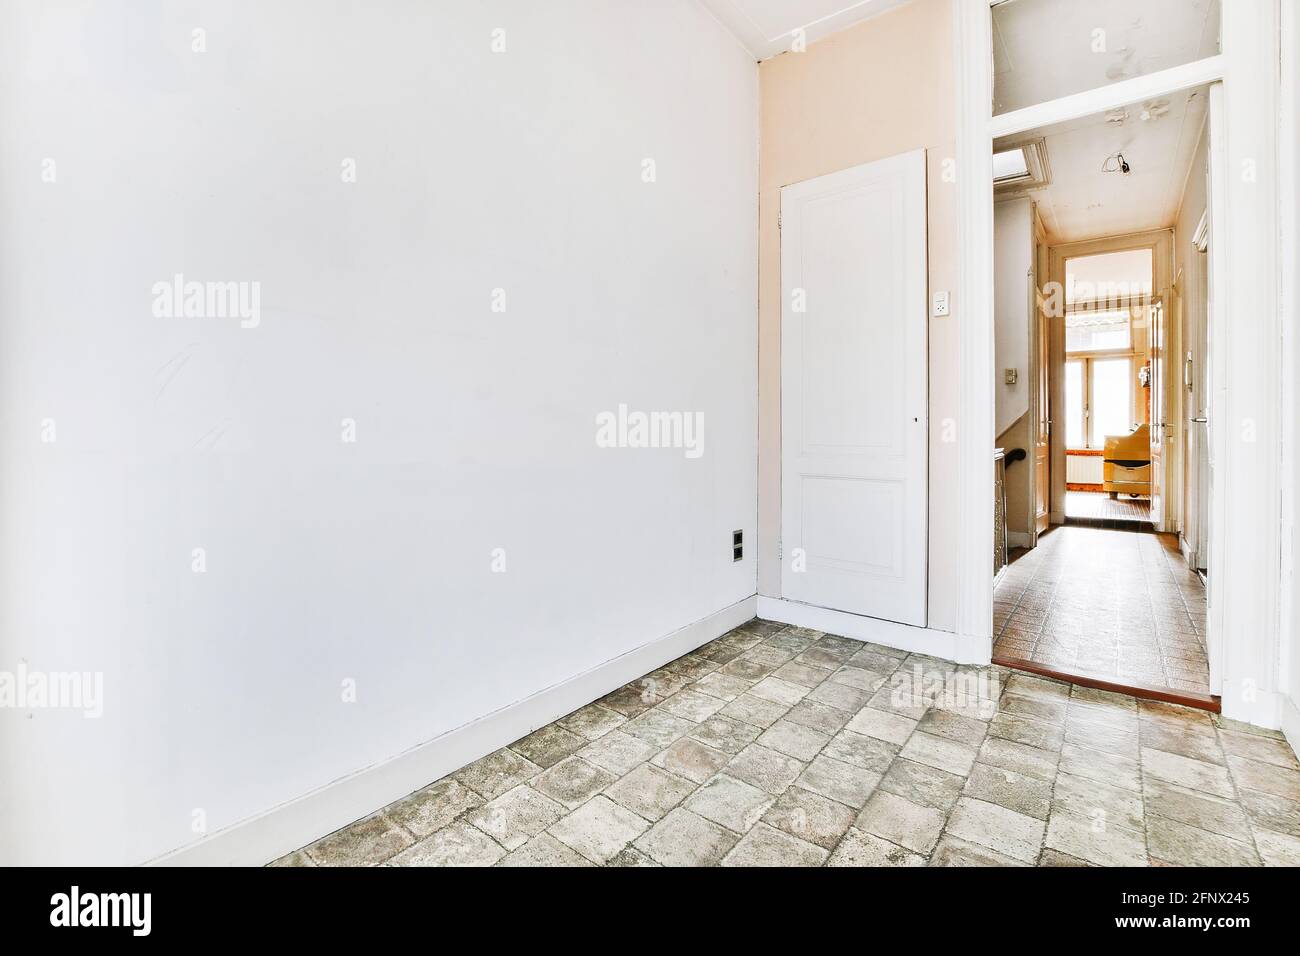 Fragment des Innenraums des leeren Raumes mit gefliestem Fußboden und Schranktür in altmodischer Wohnung mit schmalen Korridor und Weiße Wände Stockfoto